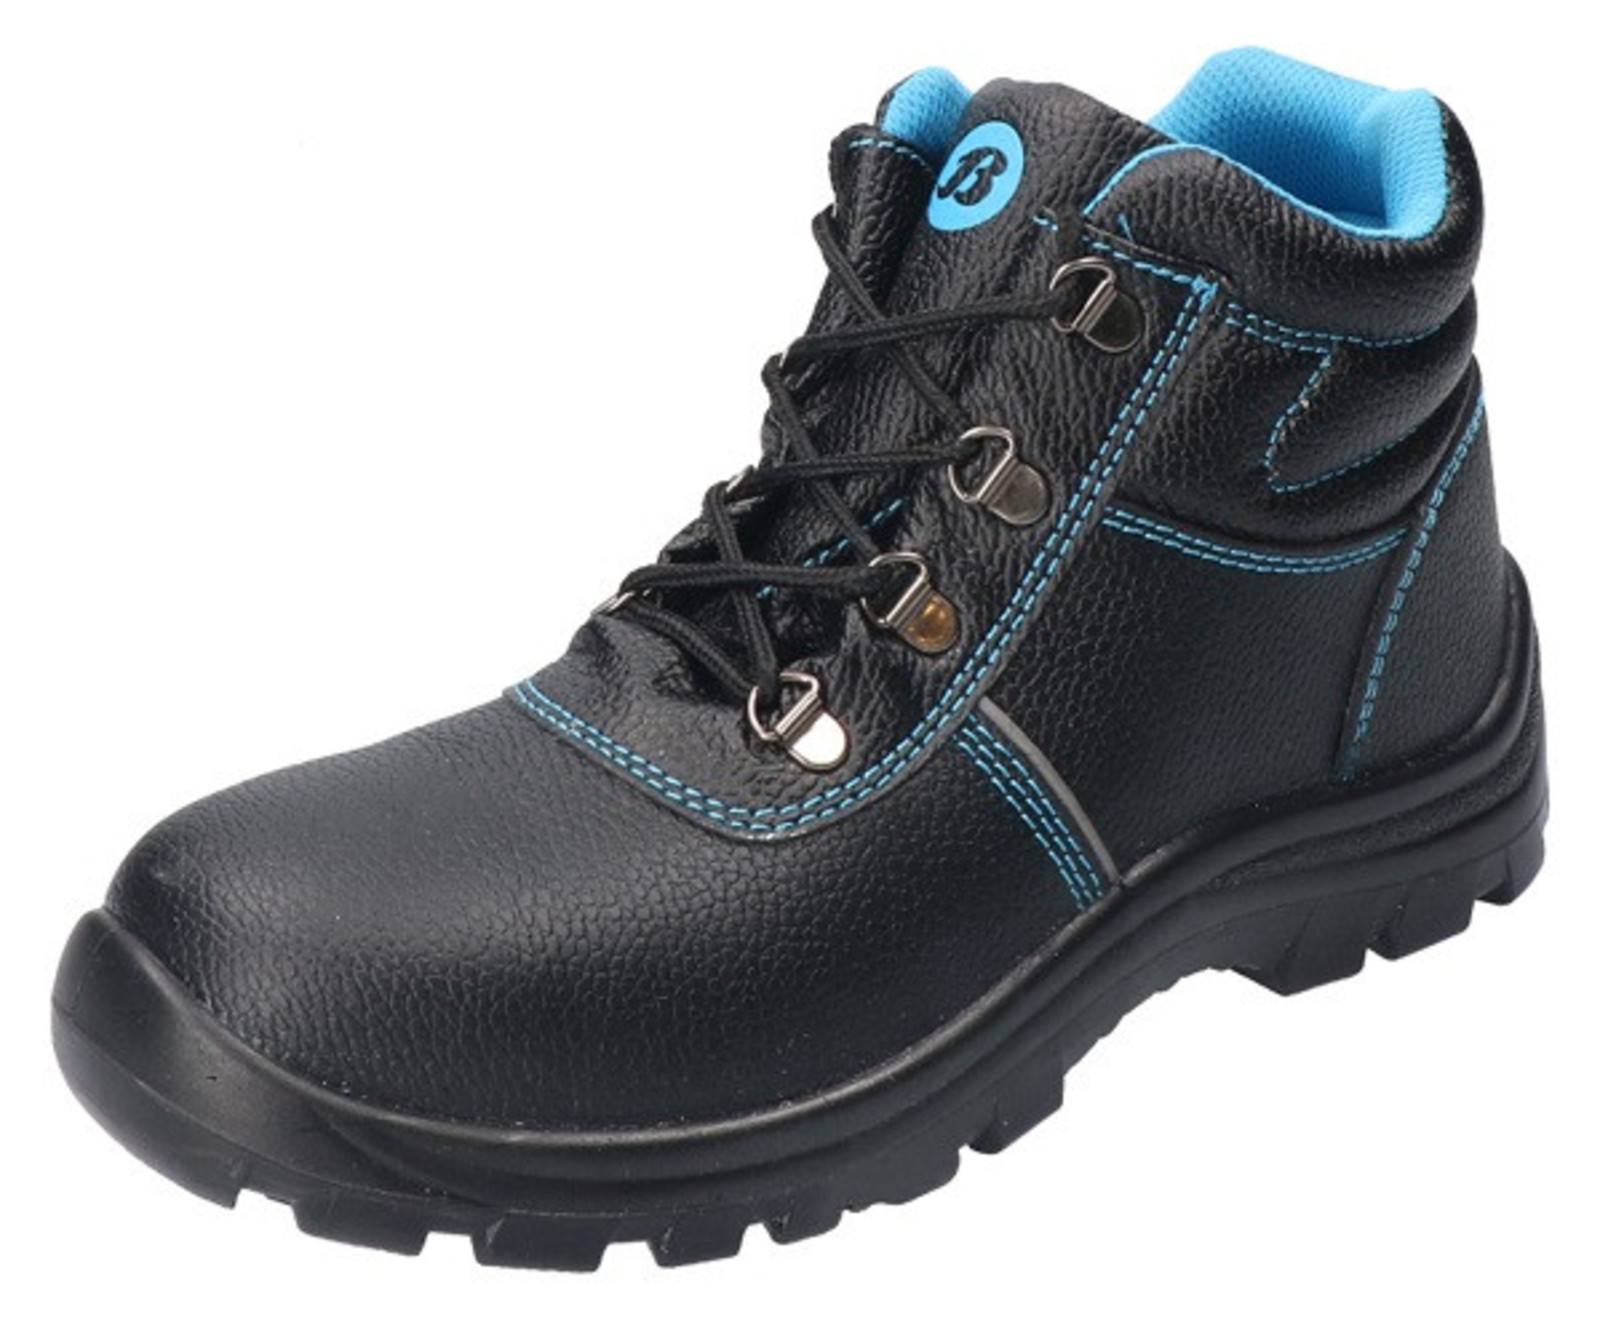 Bezpečnostná obuv Baťa Sirocco S3 - veľkosť: 36, farba: čierna